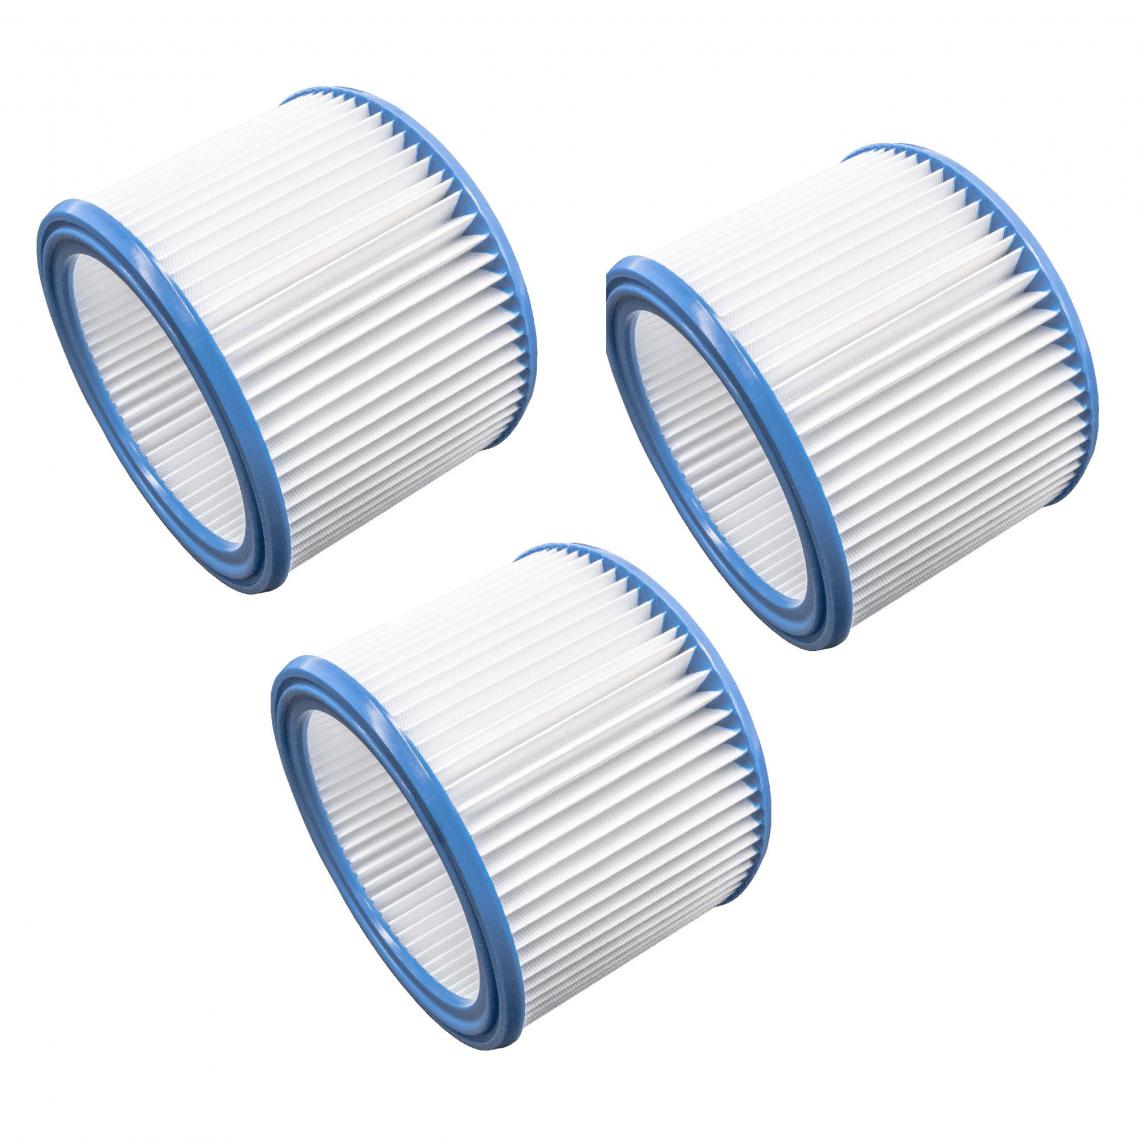 Vhbw - vhbw Set de filtres 3x Filtre plissé compatible avec Nilfisk / Alto / Wap 25-21 aspirateur à sec ou humide - Filtre à cartouche - Accessoire entretien des sols